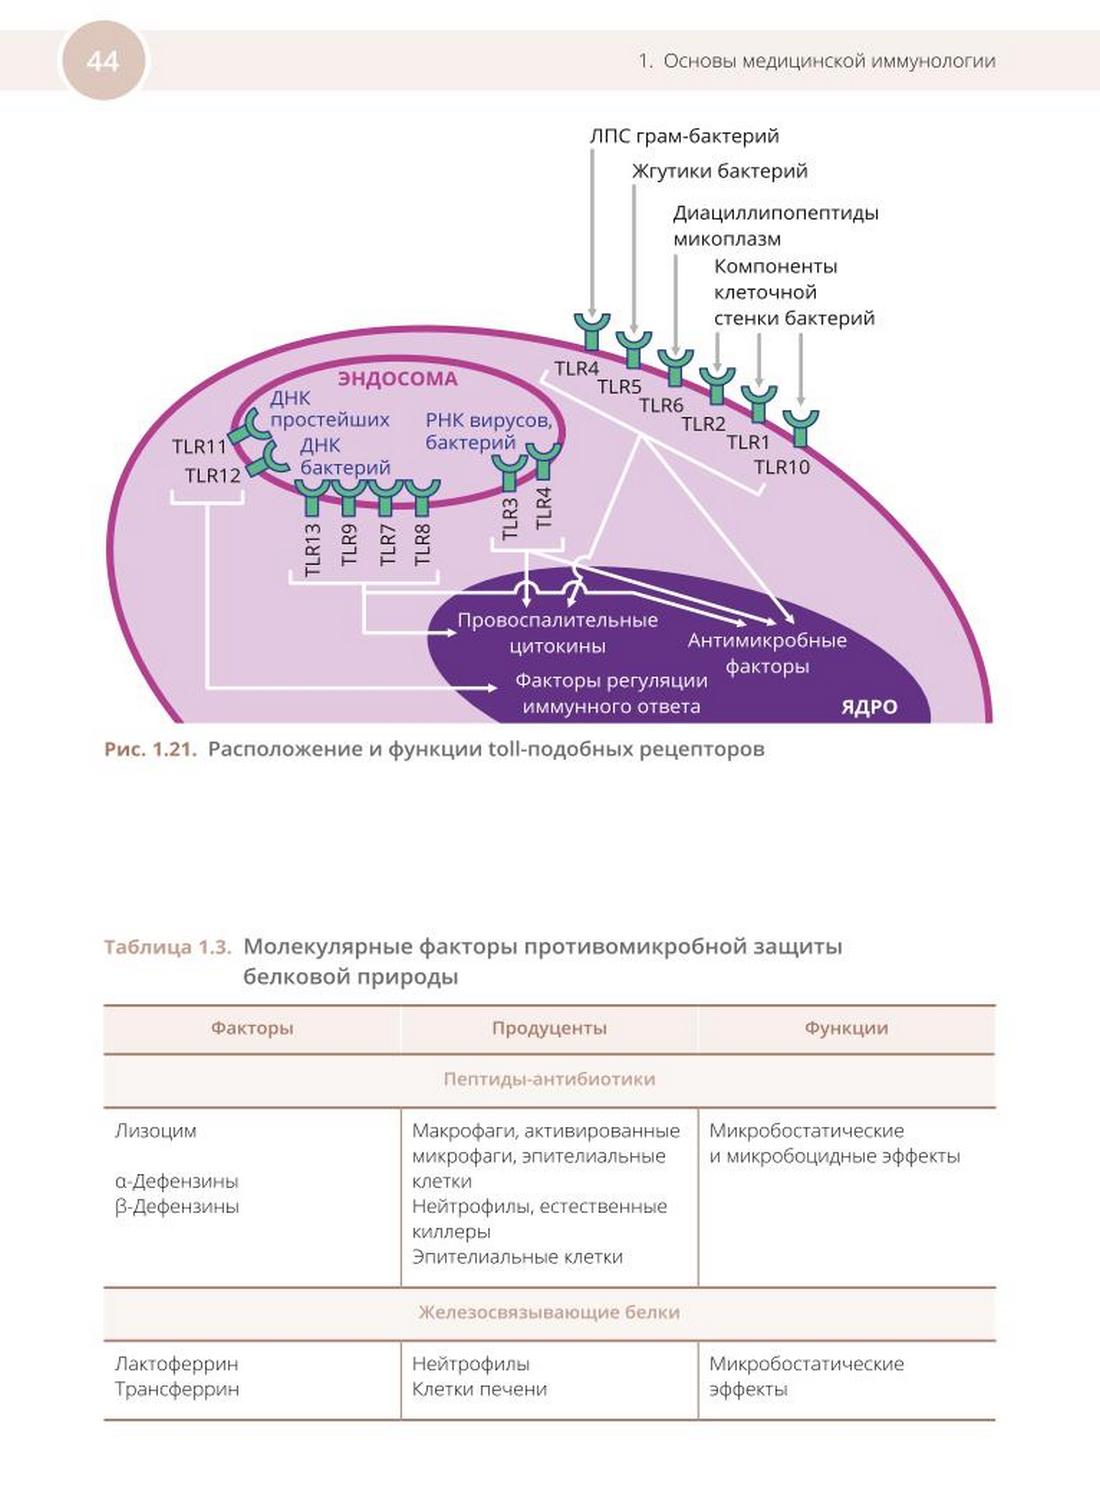 Таблица 1.3. Молекулярные факторы противомикробной защиты белковой природы